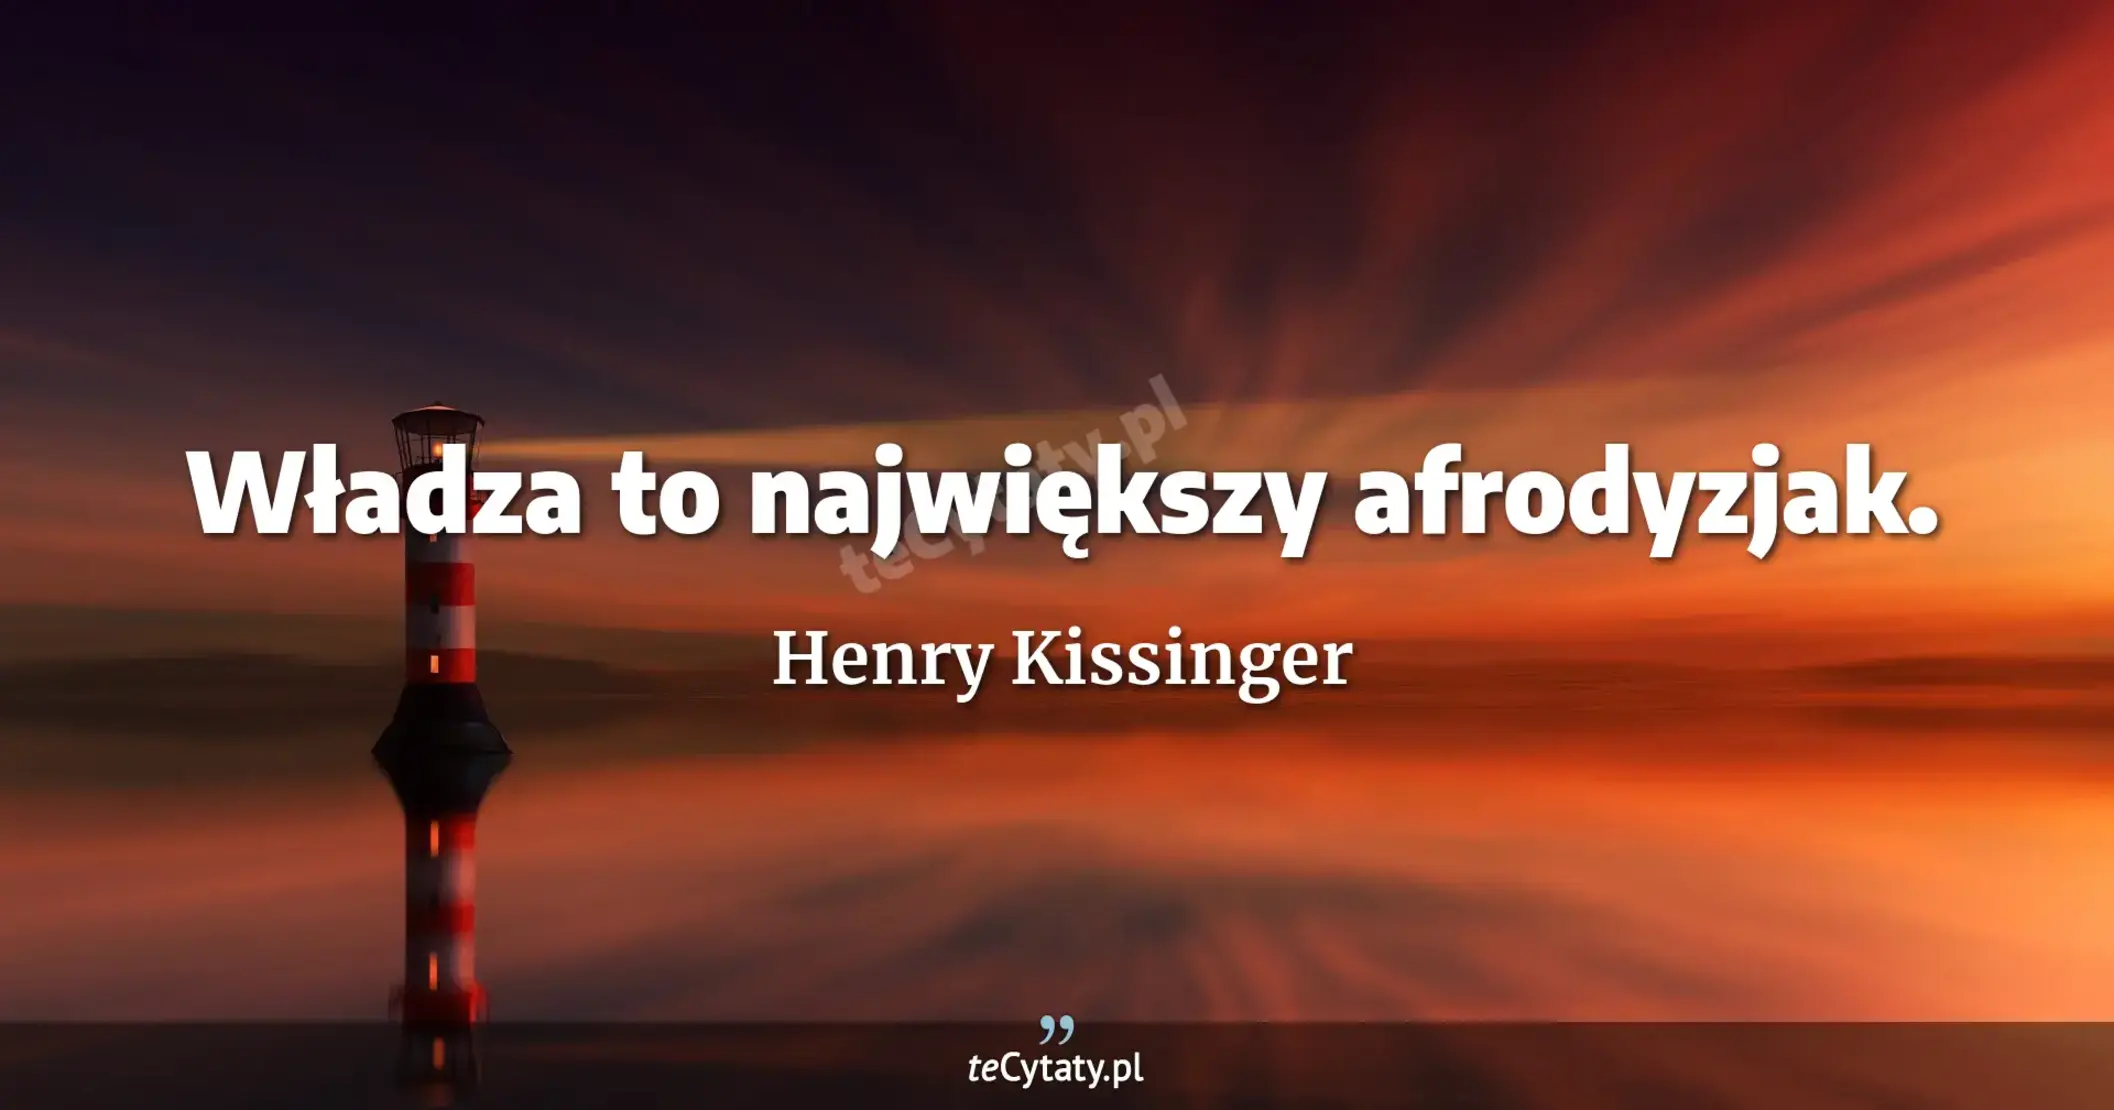 Władza to największy afrodyzjak. - Henry Kissinger